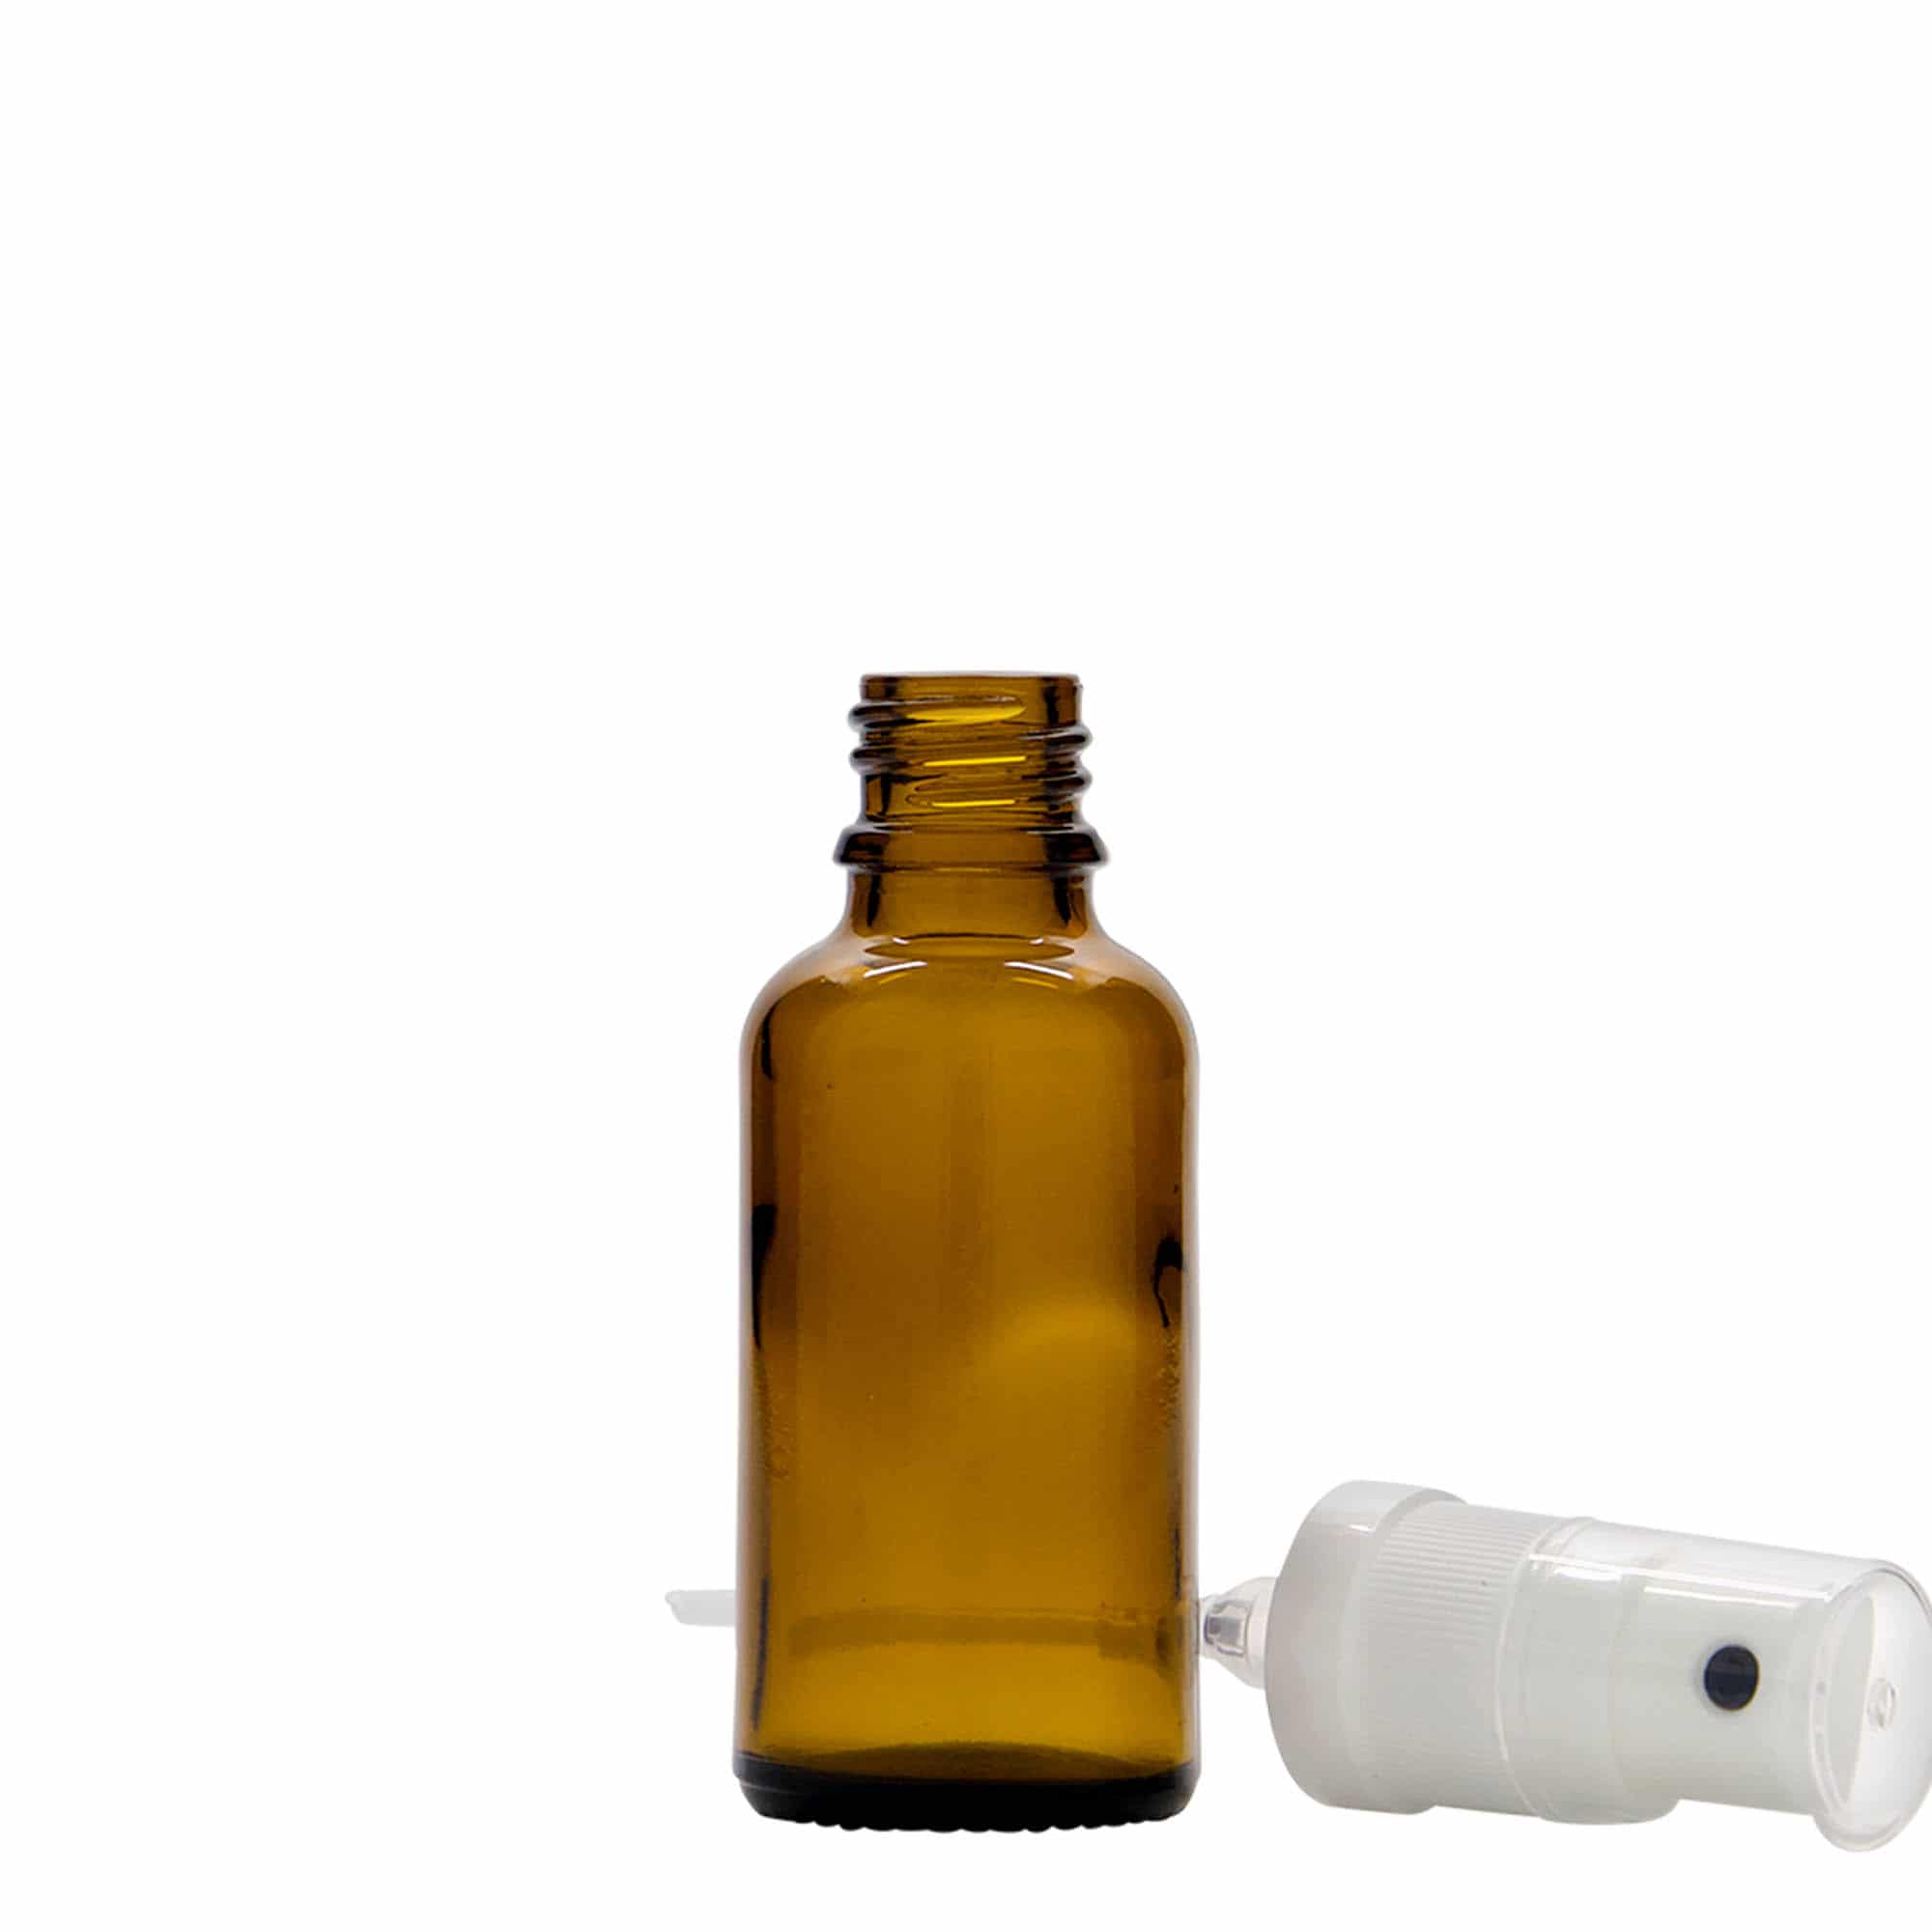 30 ml Flacone spray farmaceutico, vetro, marrone, imboccatura: DIN 18